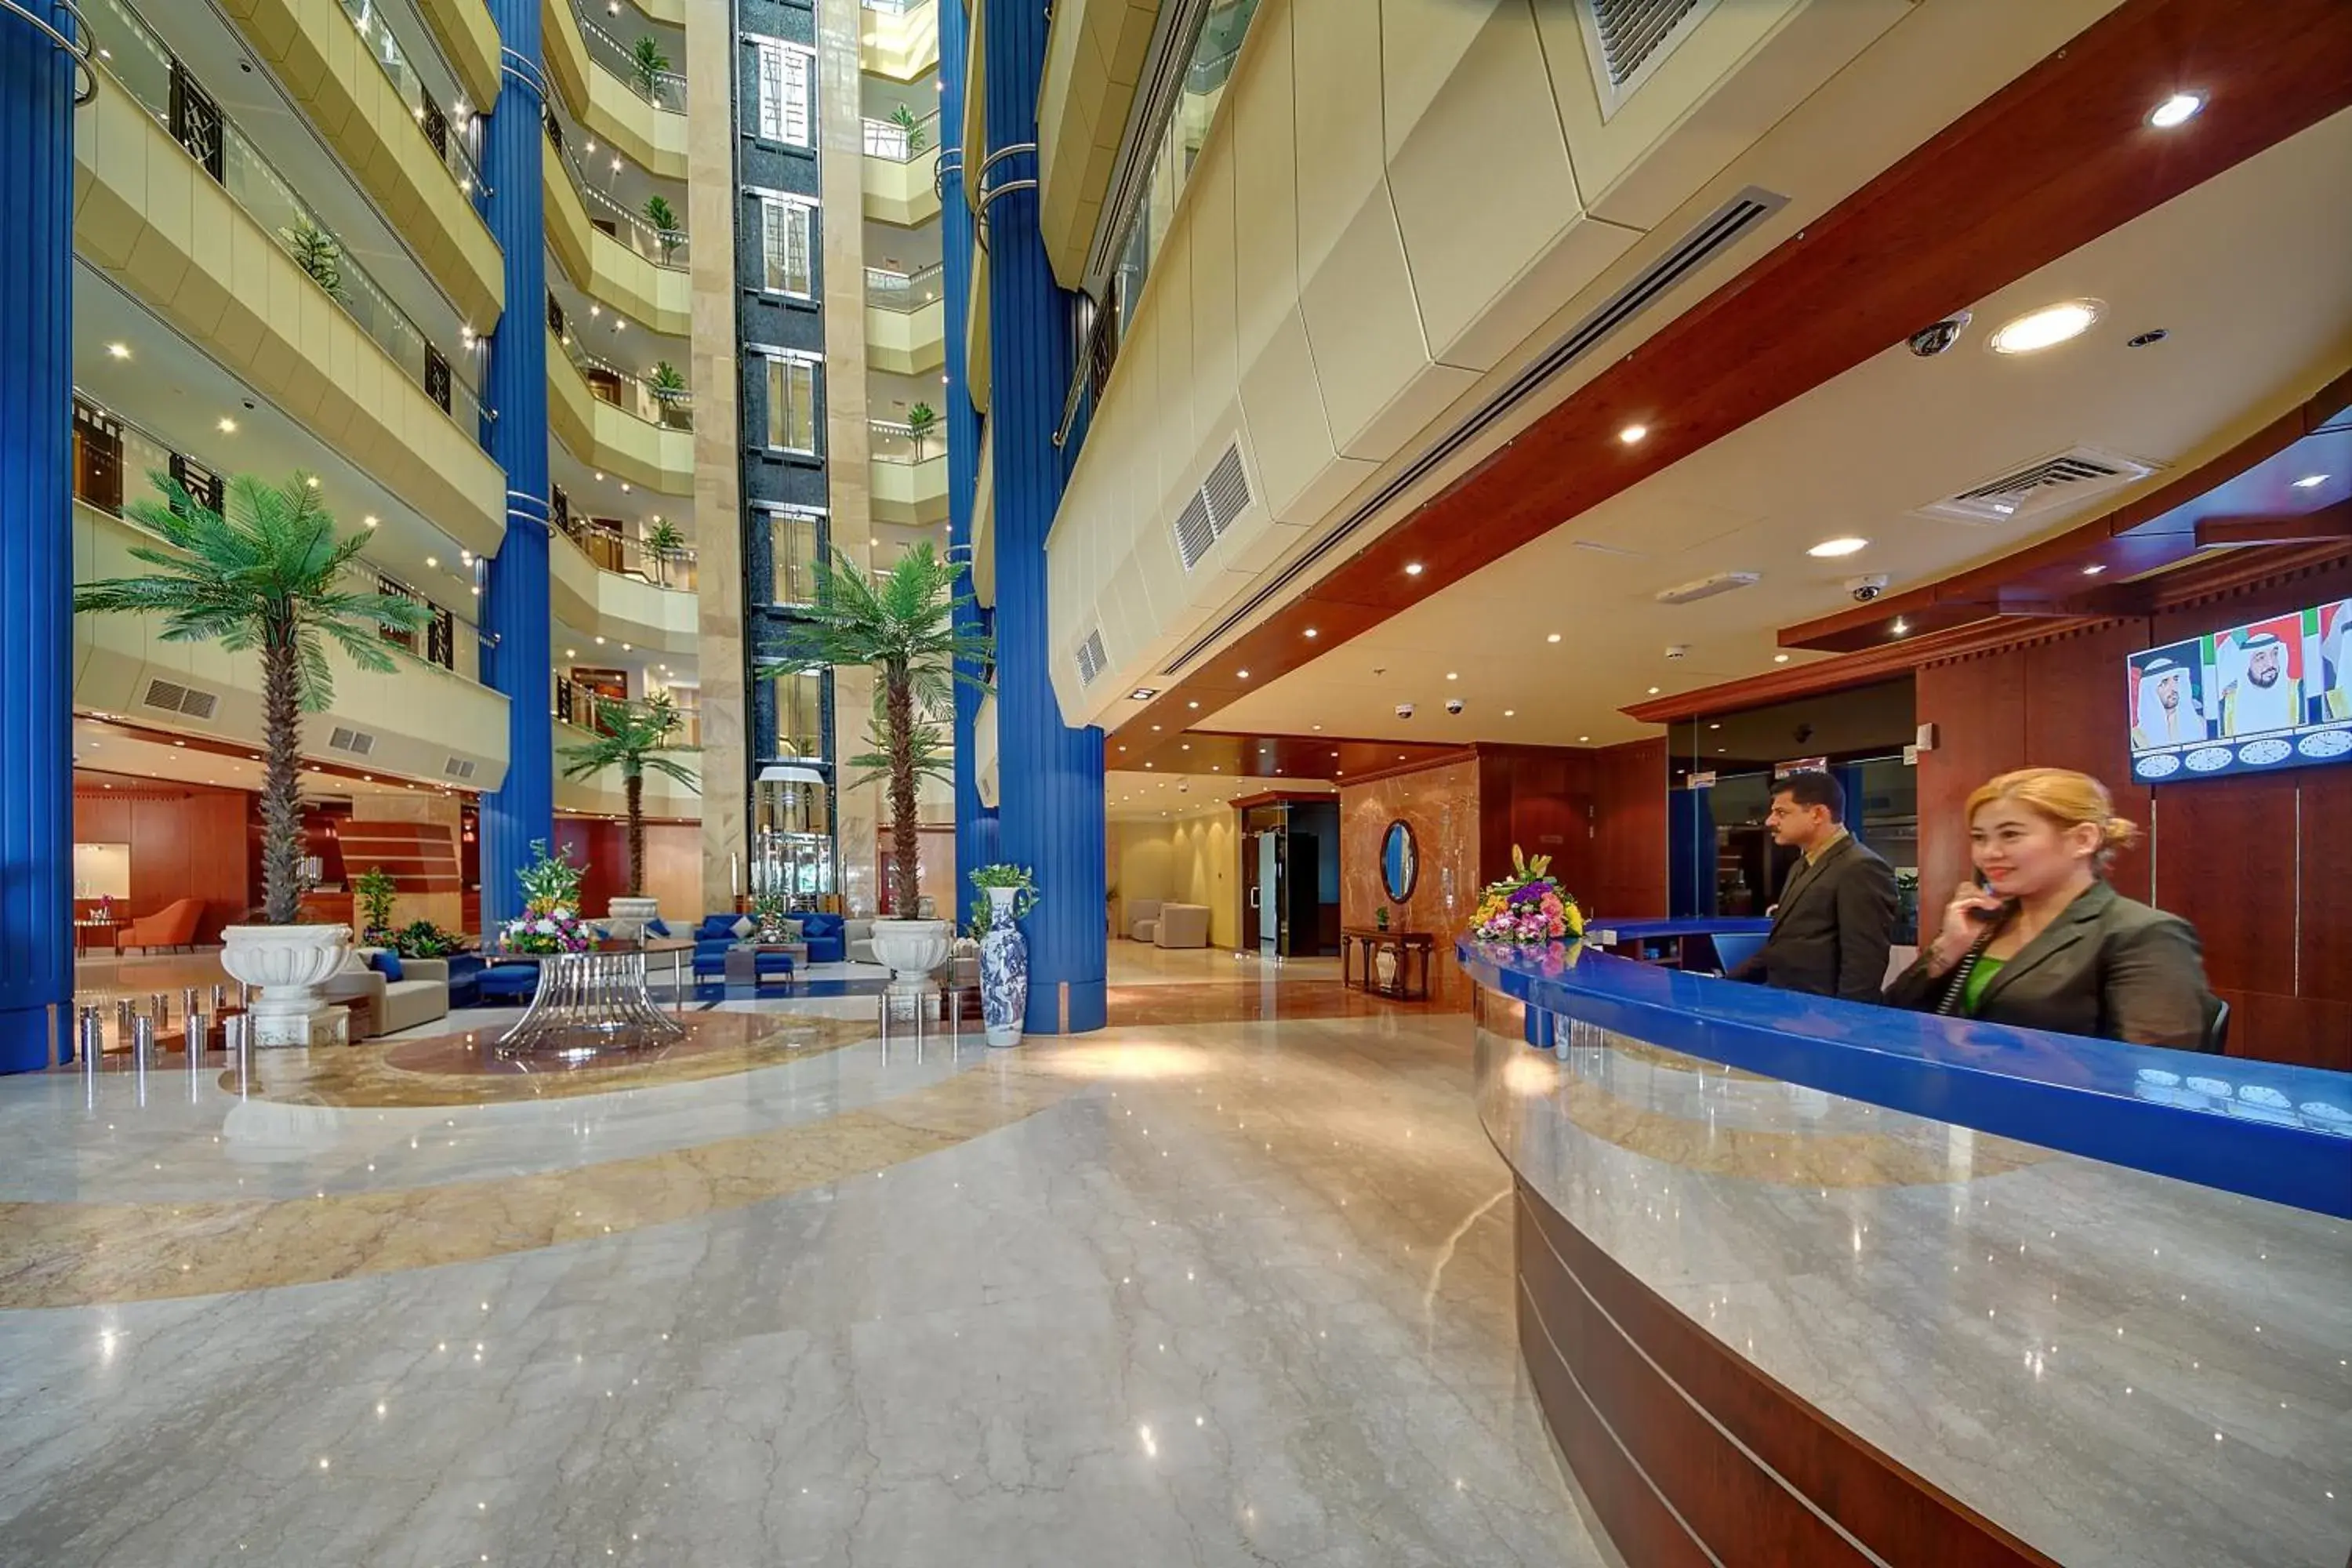 Lobby or reception in Al Manar Grand Hotel Apartment